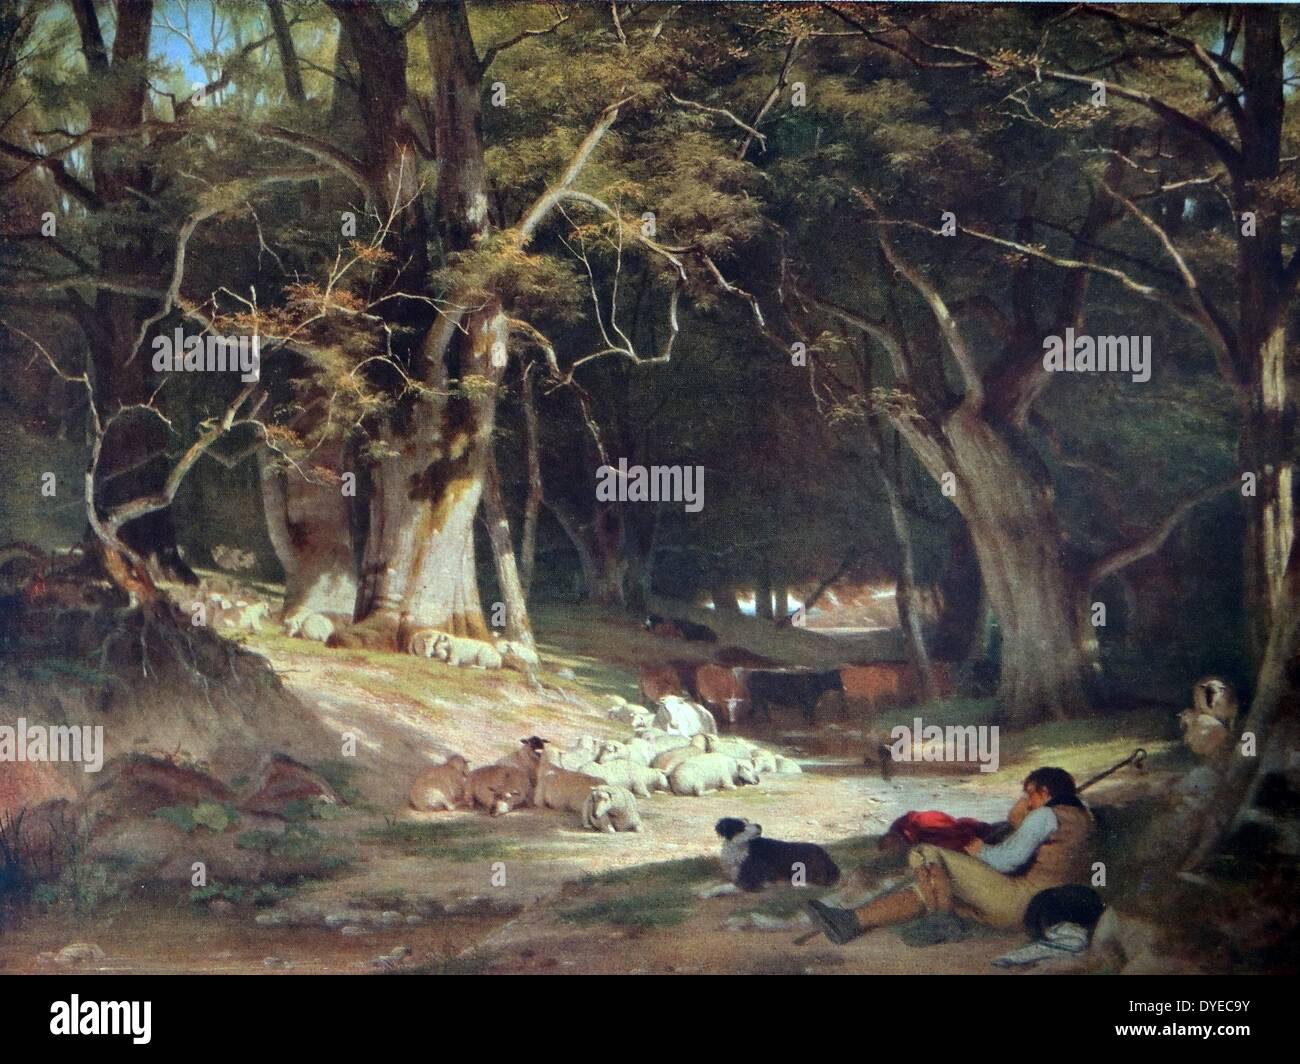 La peinture de paysage intitulé La Mi-journée. Le tableau représente une scène avec un bois Shepard et son chien prendre du repos, de l'élevage du troupeau de moutons. Par William Frederick Witherington (1785 - 1865) peintre français et universitaires. Daté de 1845 Banque D'Images